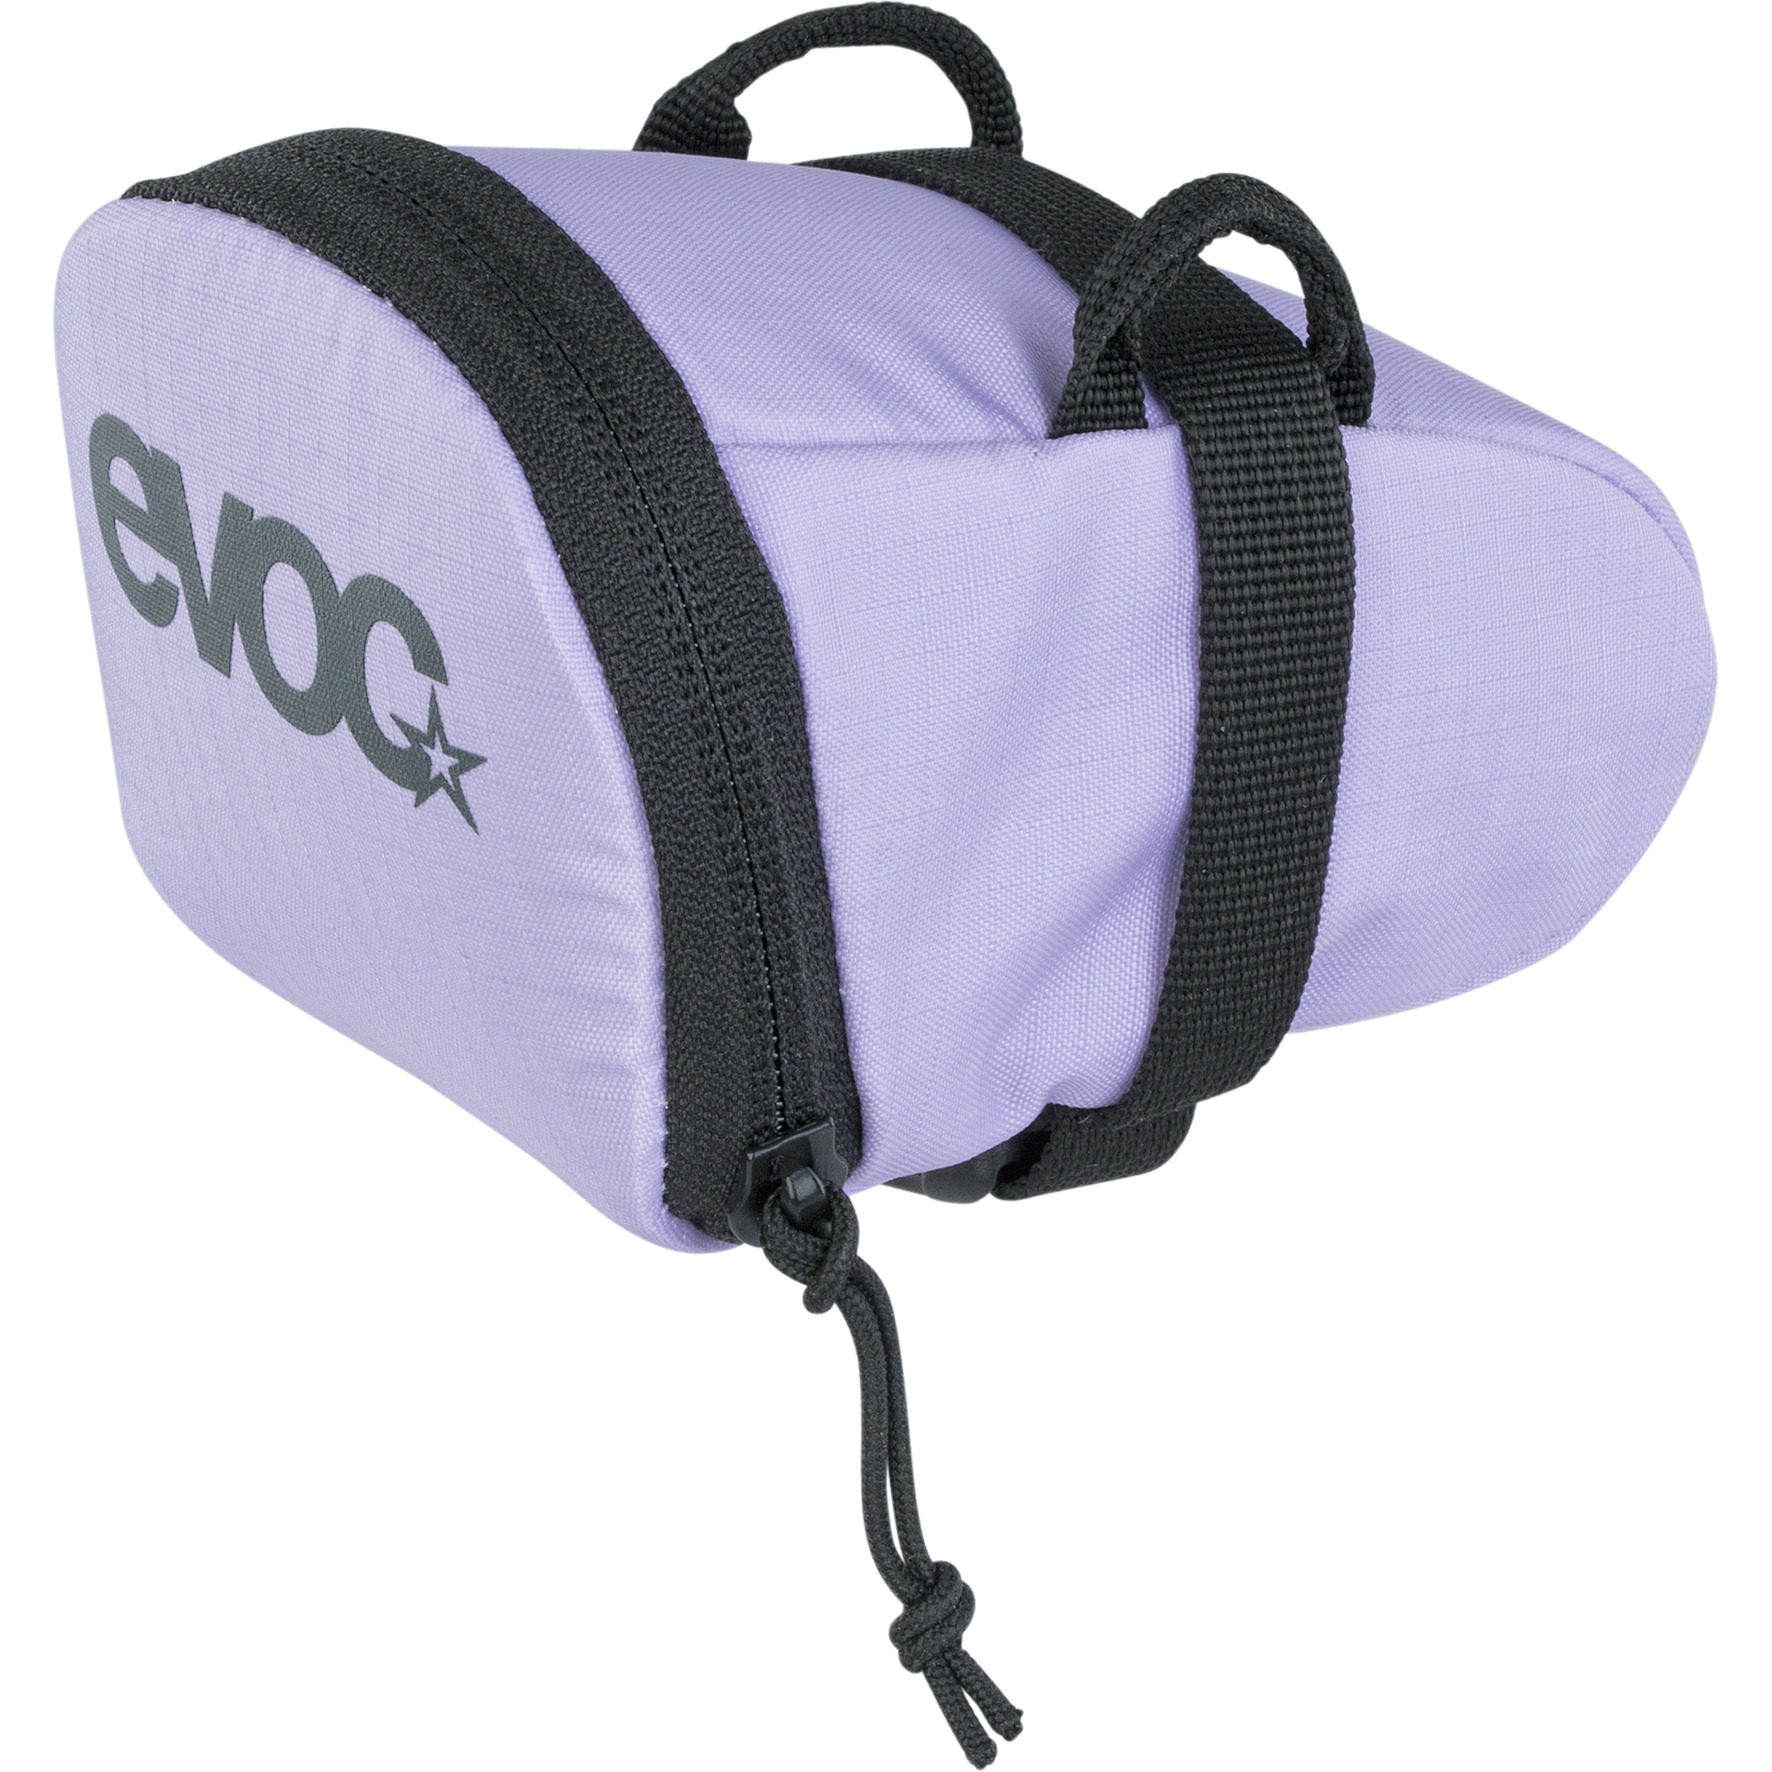 Produktbild von EVOC Seat Bag 0.3L Satteltasche - Multicolour